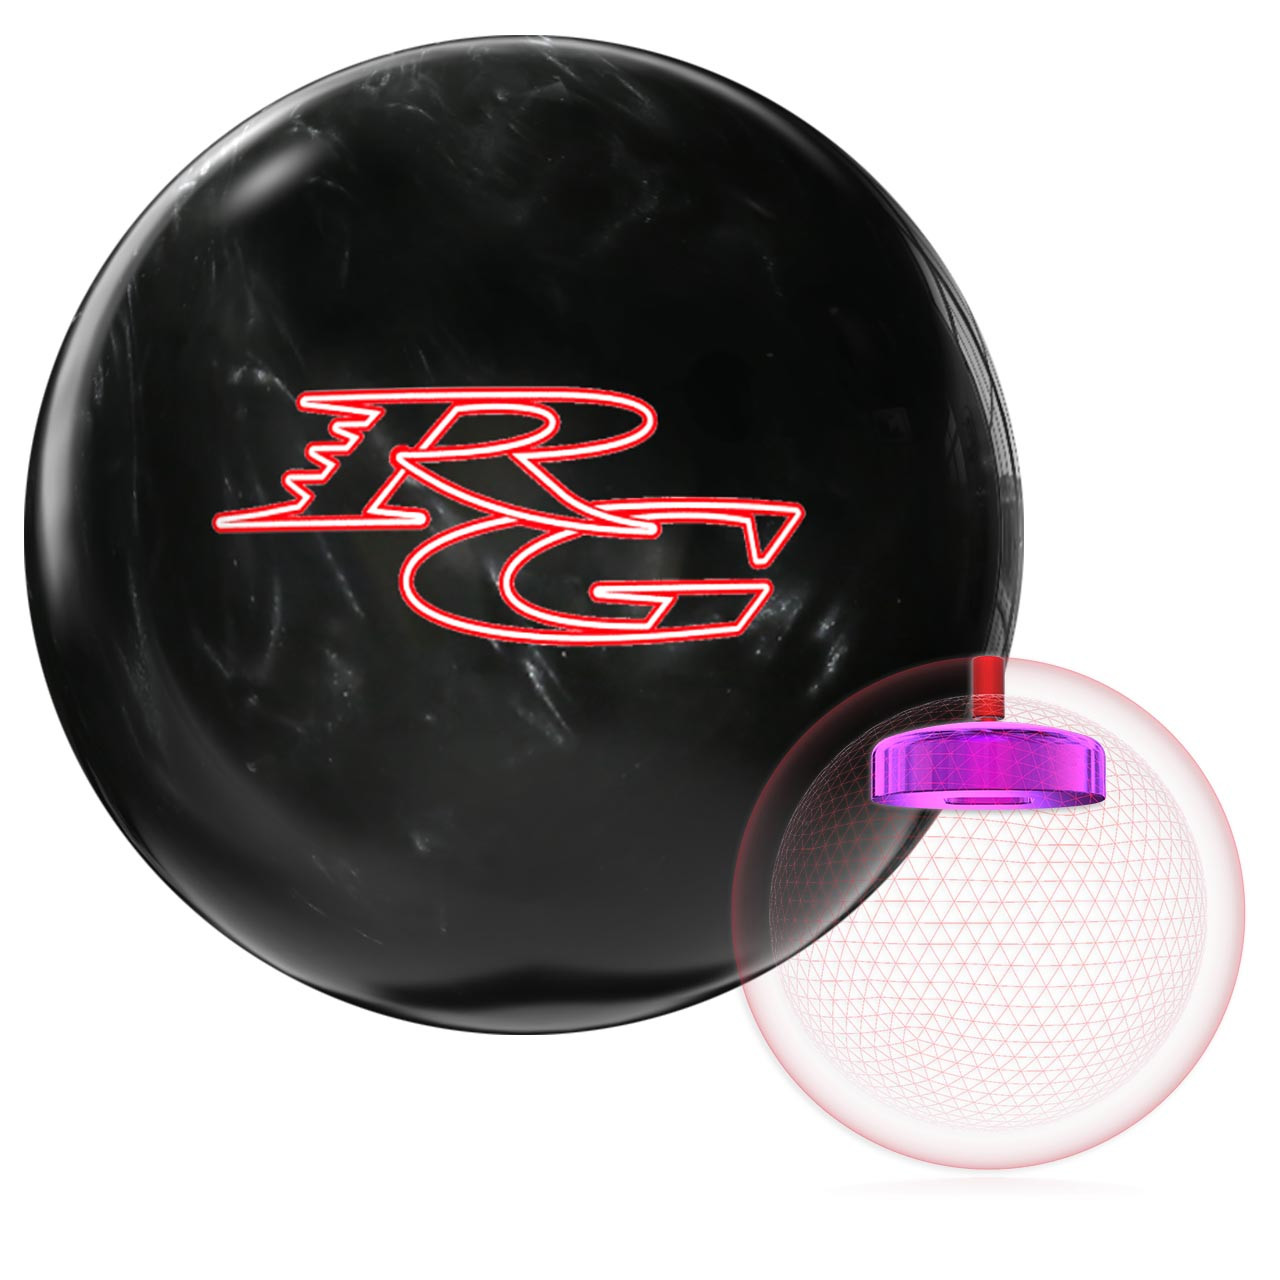 Roto Grip Retro RG Spare Bowling Ball FREE SHIPPING